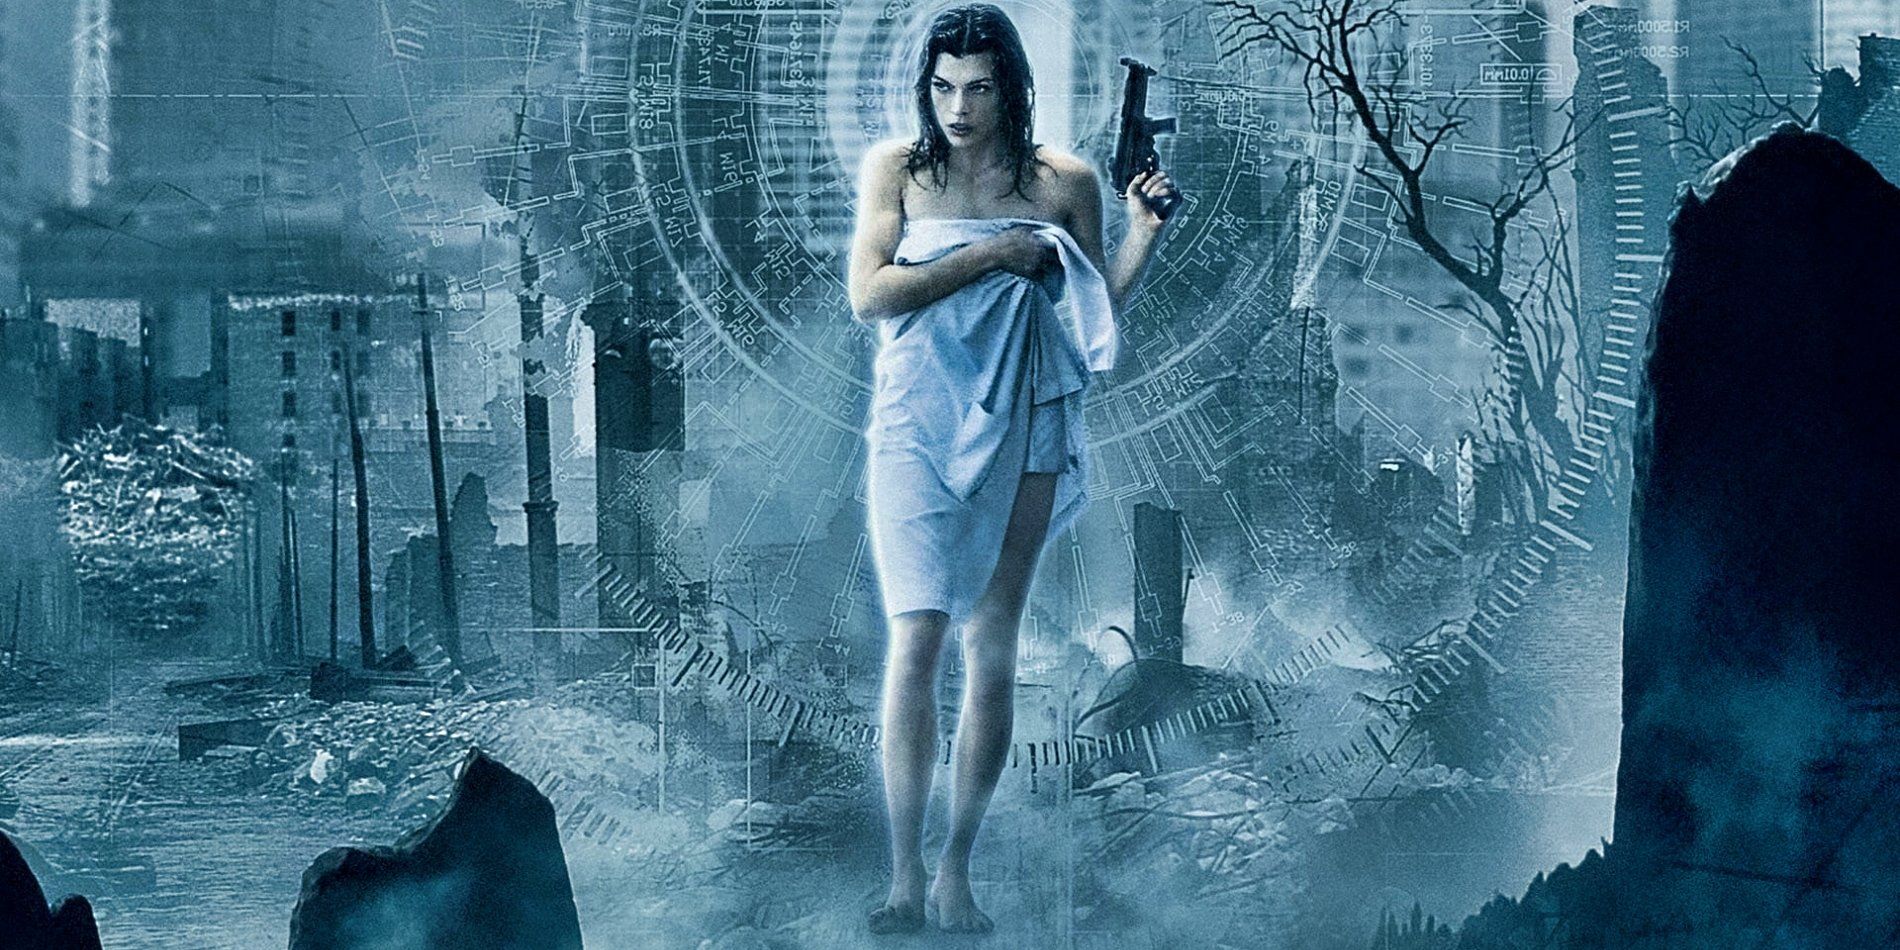 Resident Evil Apocalypse - Jill Valentine  Resident evil costume, Sienna  guillory, Resident evil movie